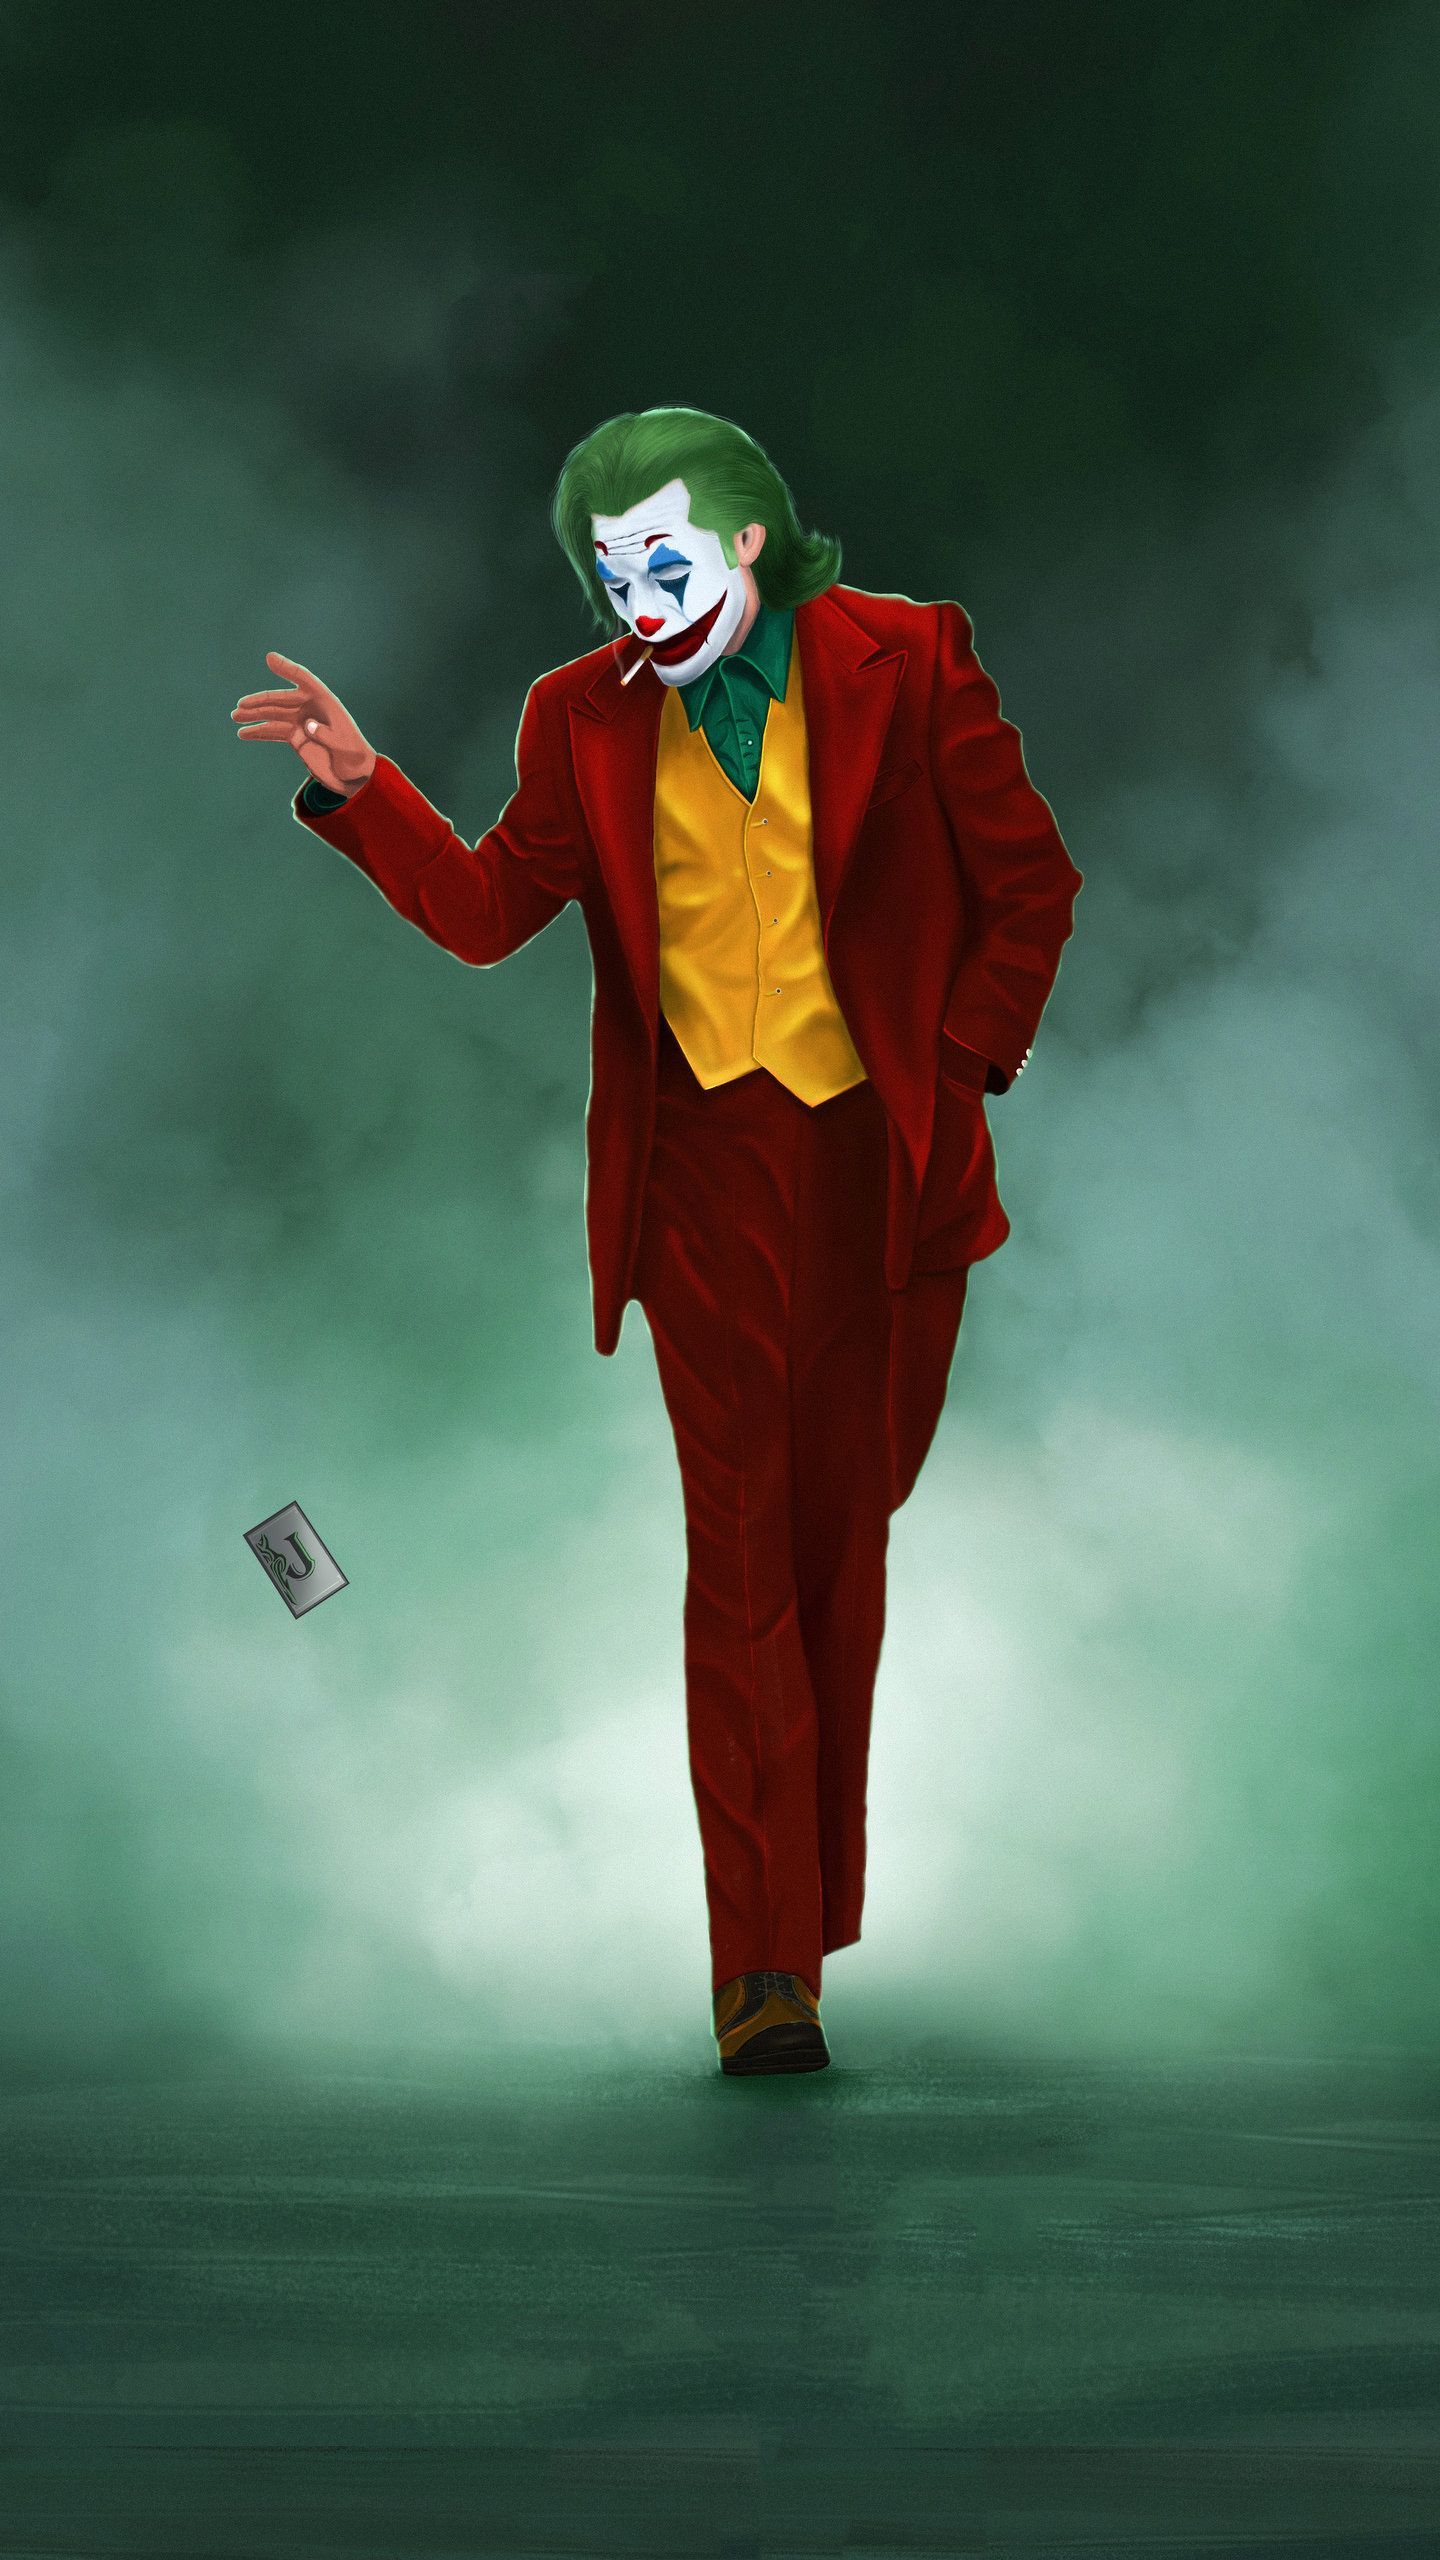 4kjoker Movie HD Wallpaper (1440x2560). Joker image, Batman